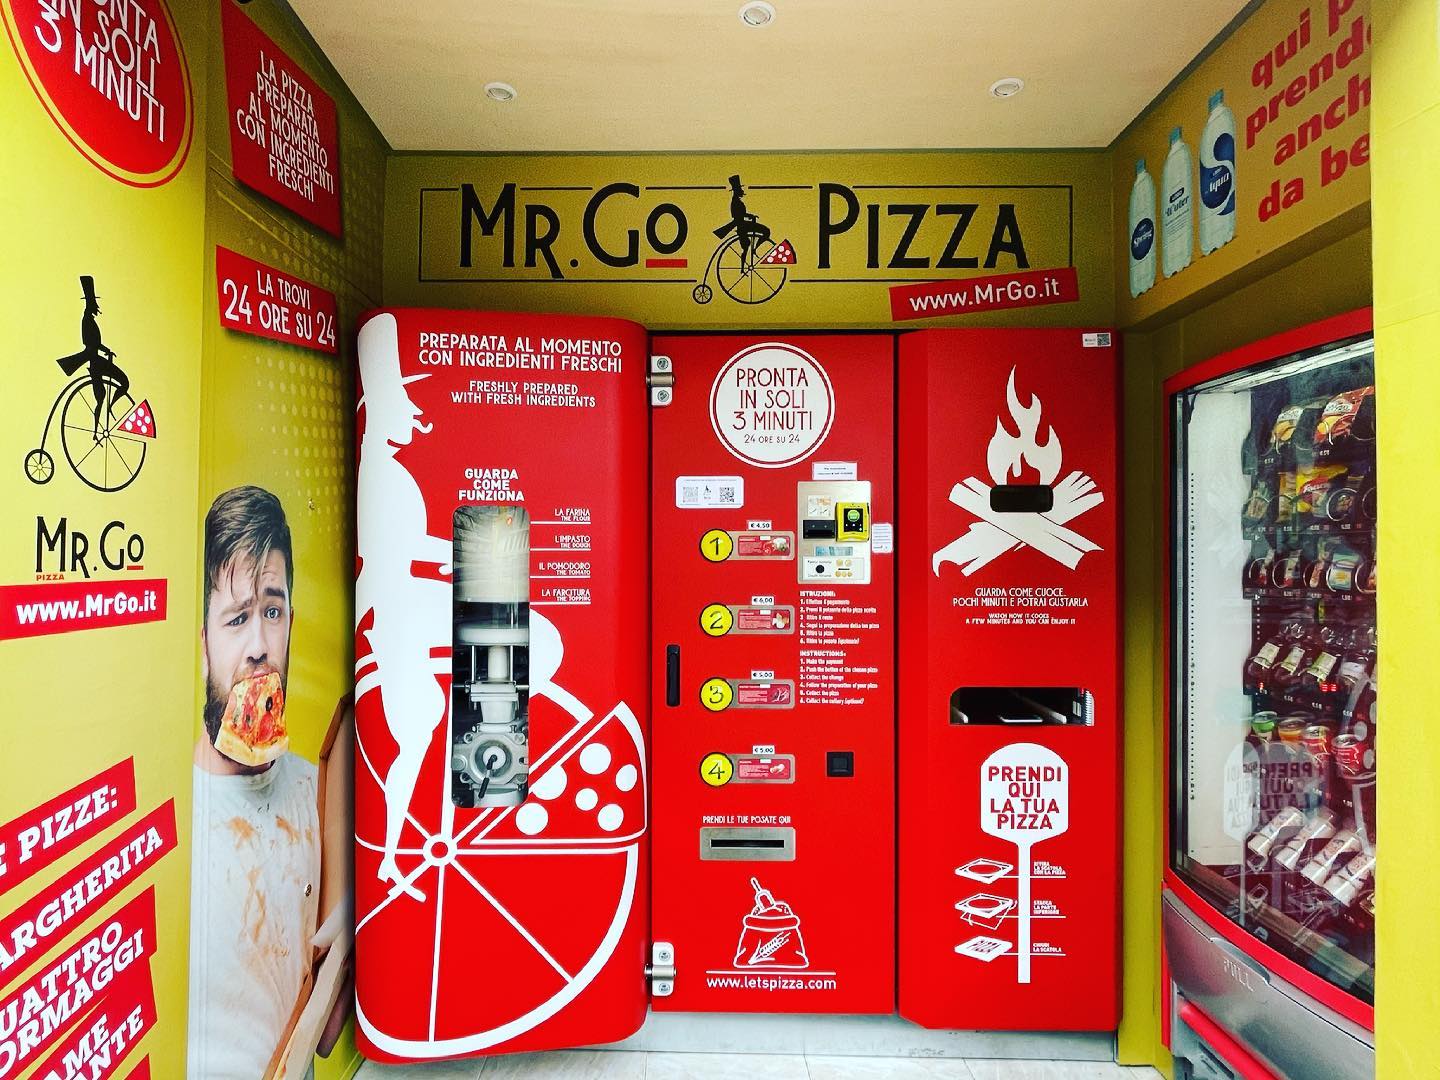 Volt, aki elborzadva fogadta az első római pizza automatát